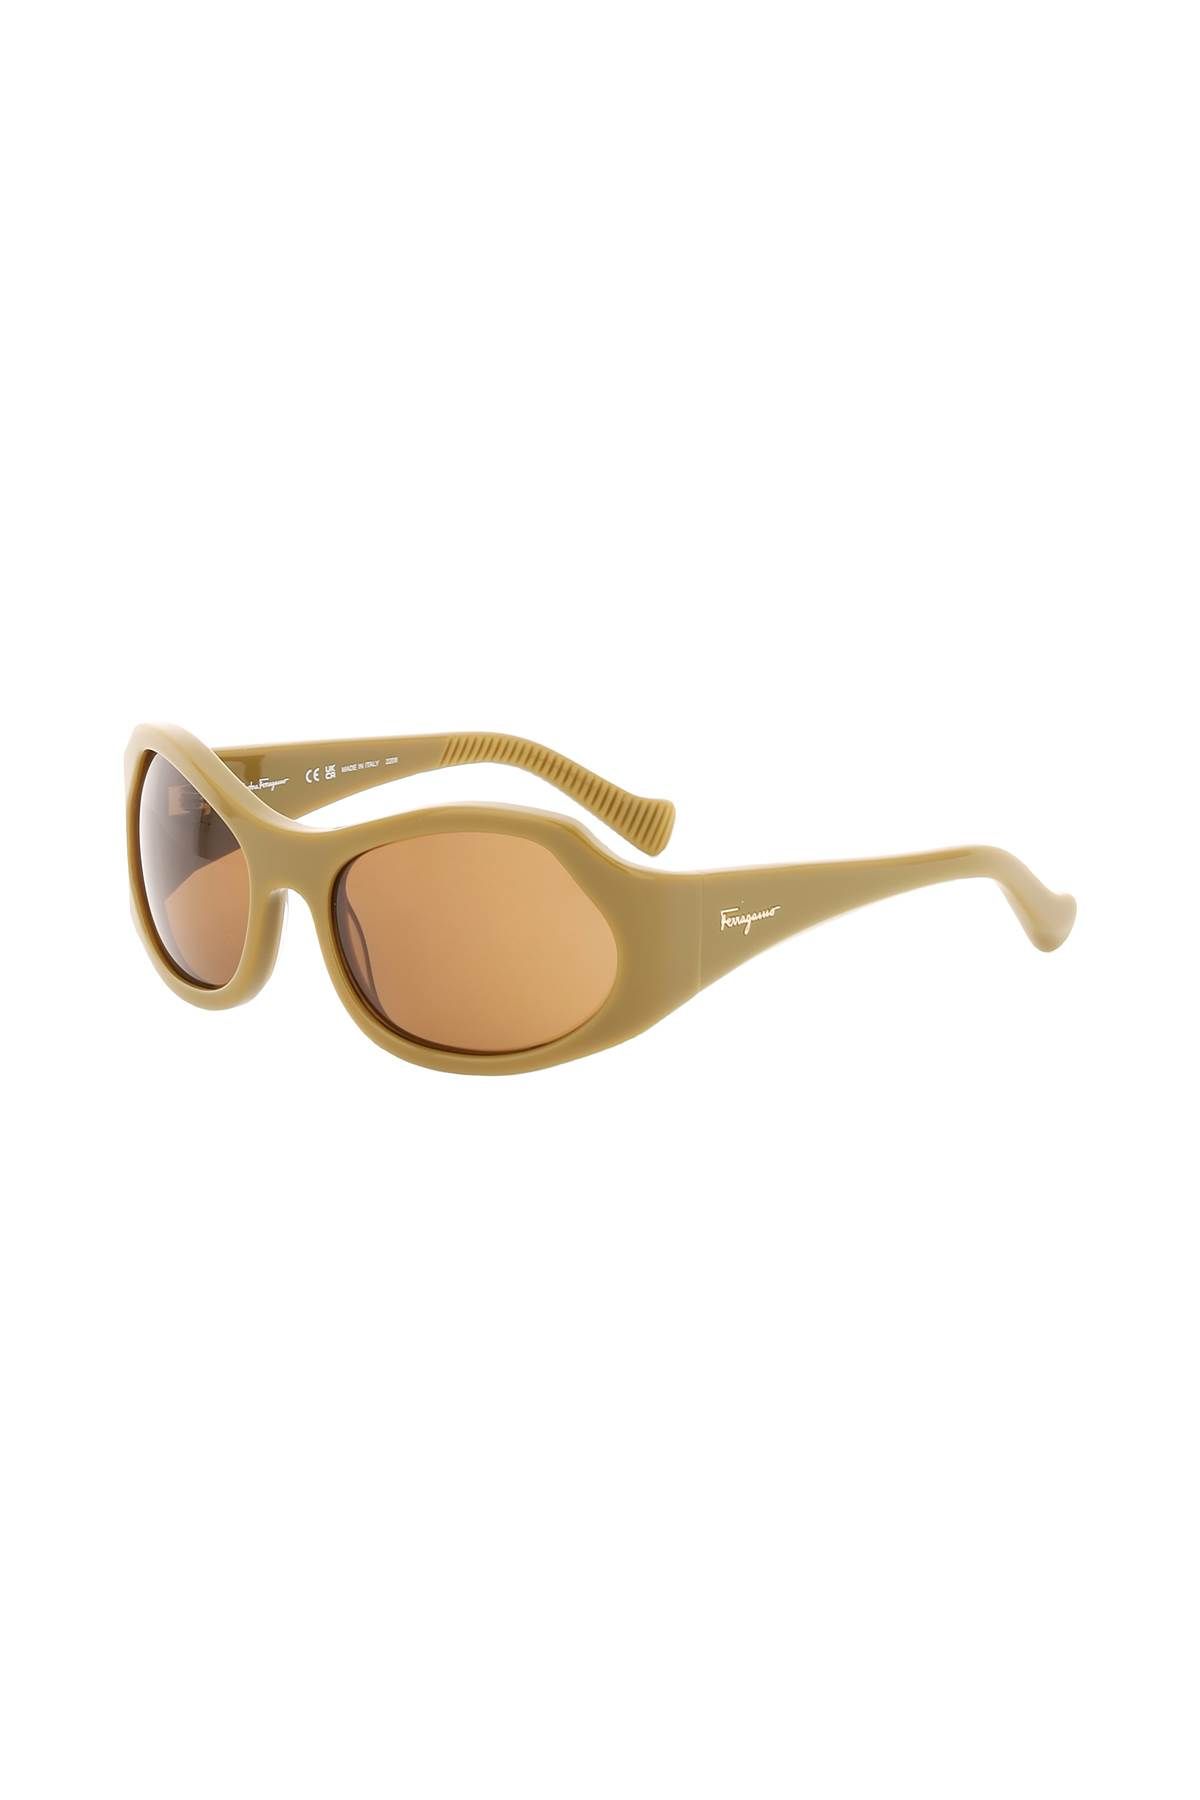 Shop Ferragamo Oval Sunglasses In Khaki